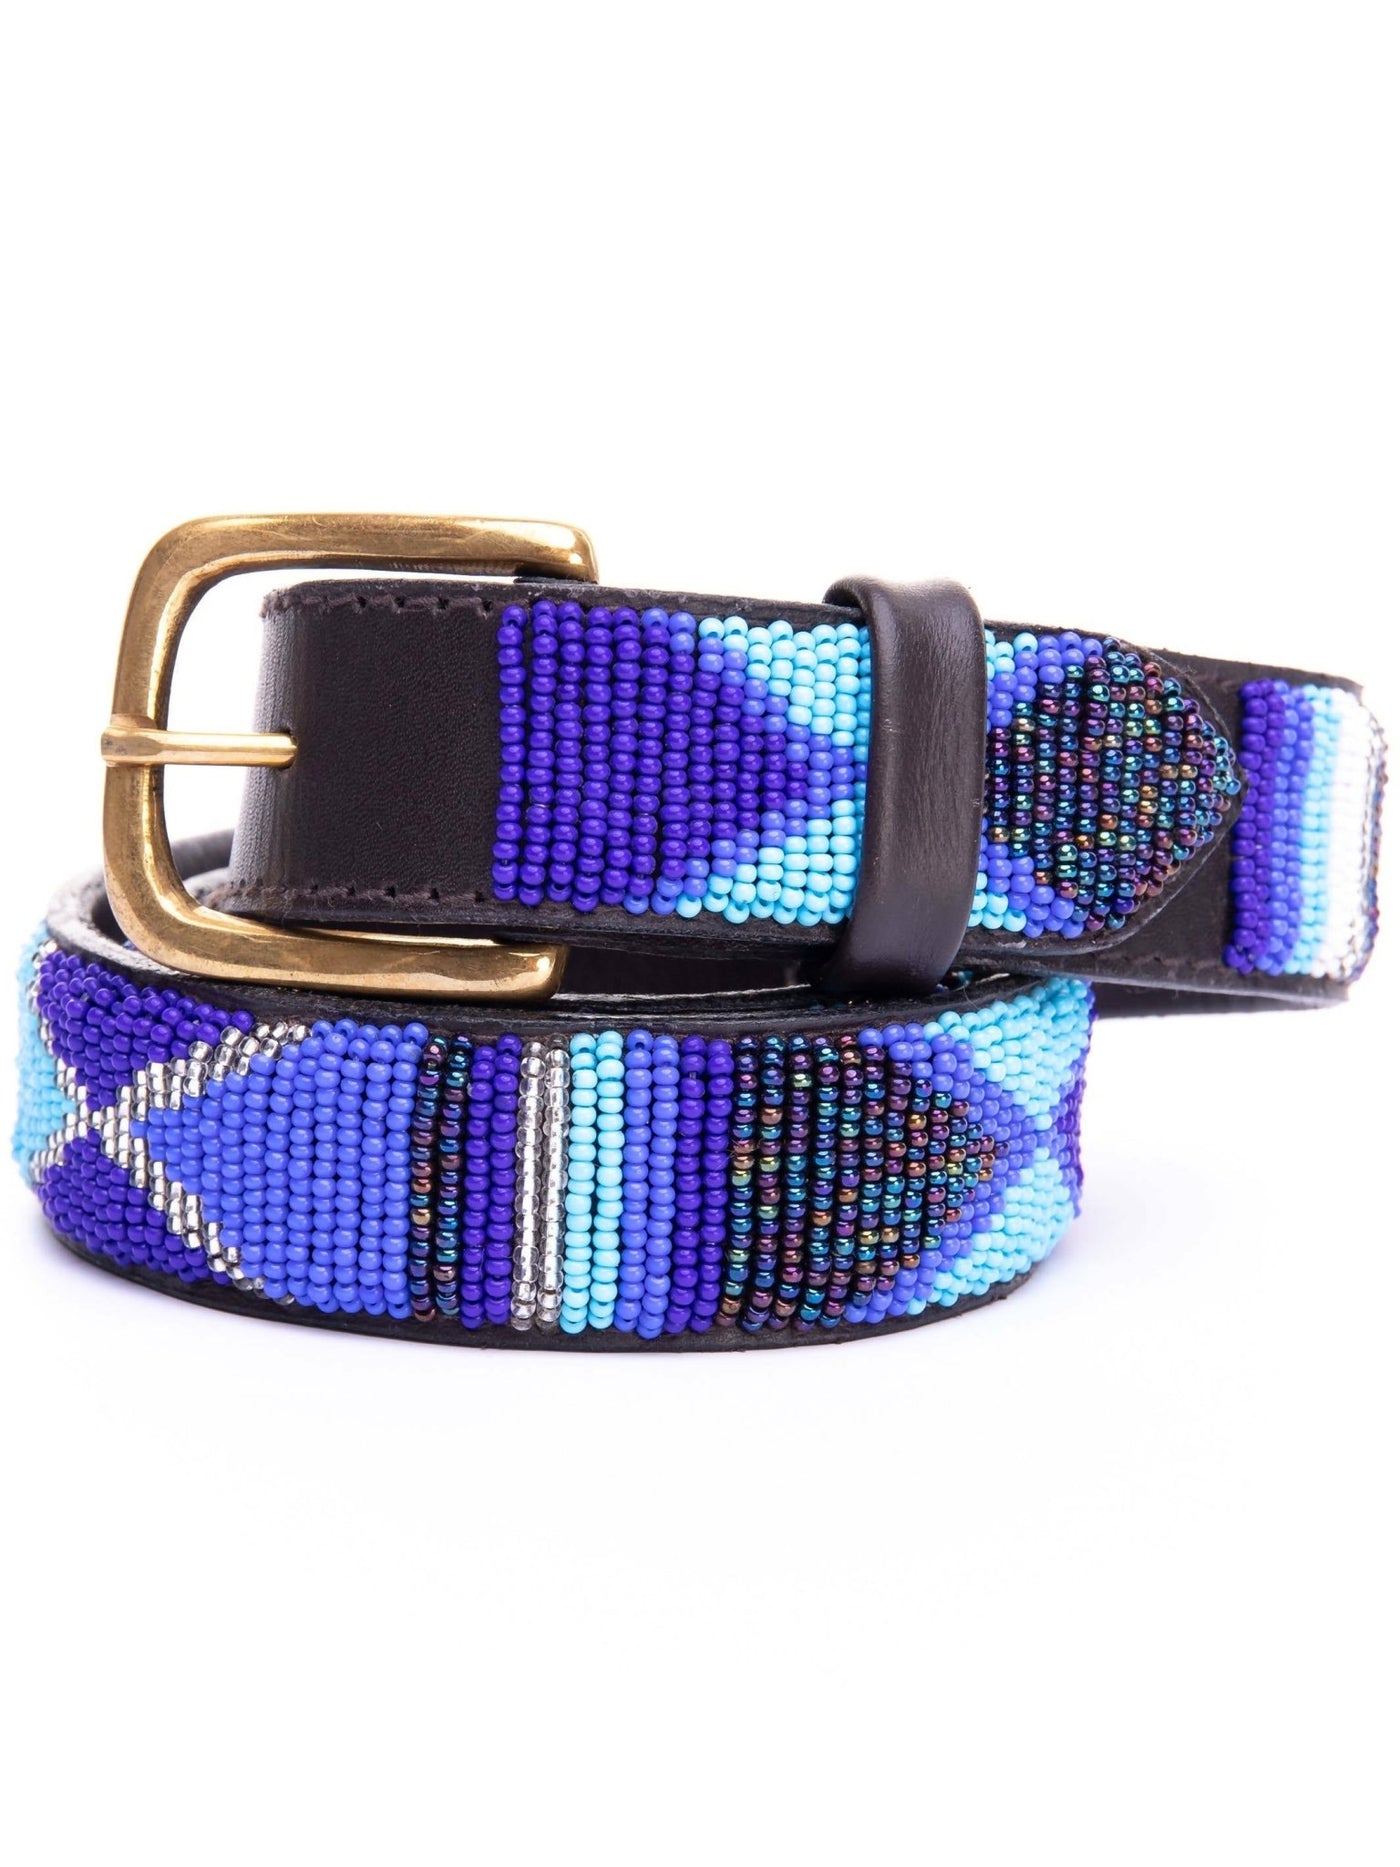 Azu Casual 3 Cm Beaded Belts - Blue Print - Shopzetu